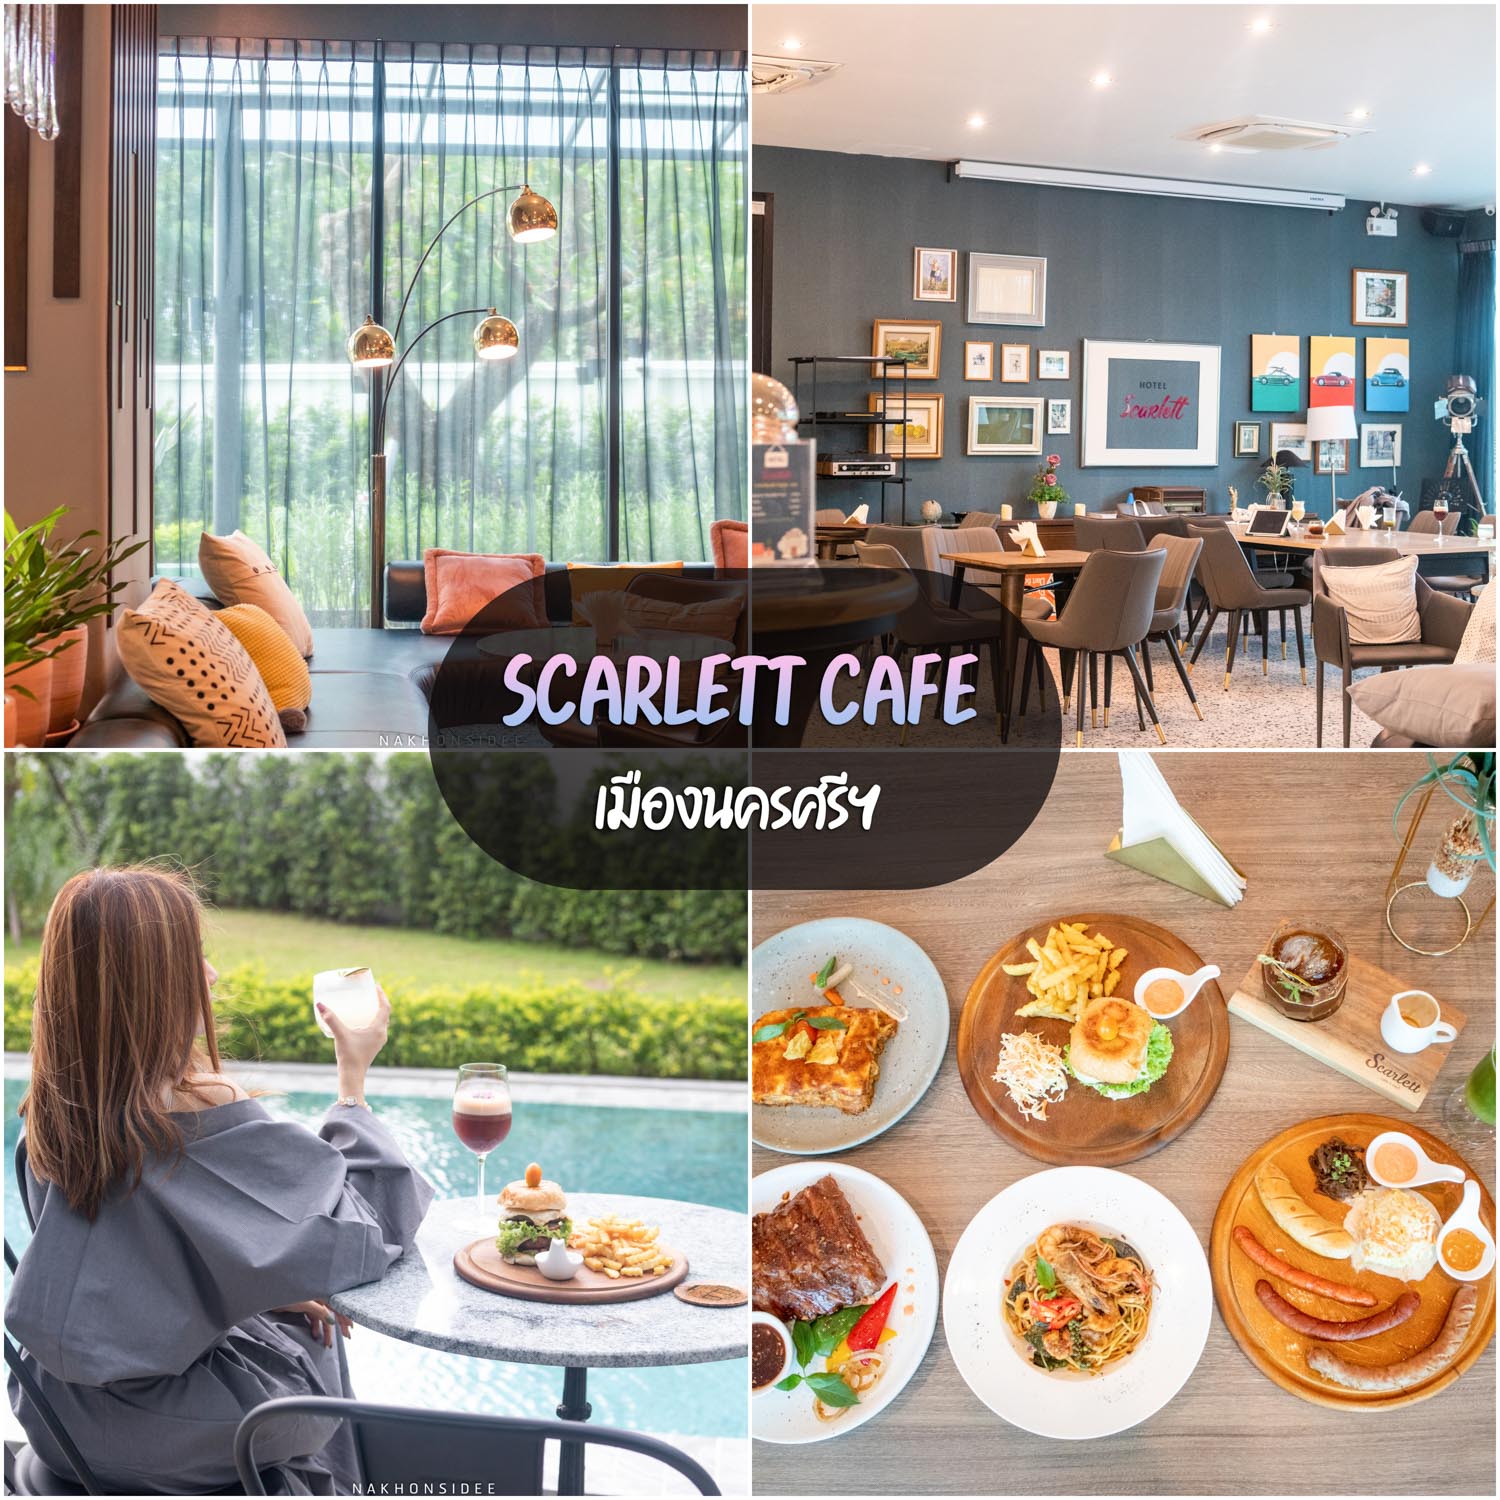 Scarlett-Cafe -คาเฟ่เปิดใหม่-นครศรีธรรมราช-ใจกลางเมือง-สะดวกสบาย-อาหารอร่อย-เครื่องดื่มเพียบบ-
 ที่เที่ยวนครศรีธรรมราช